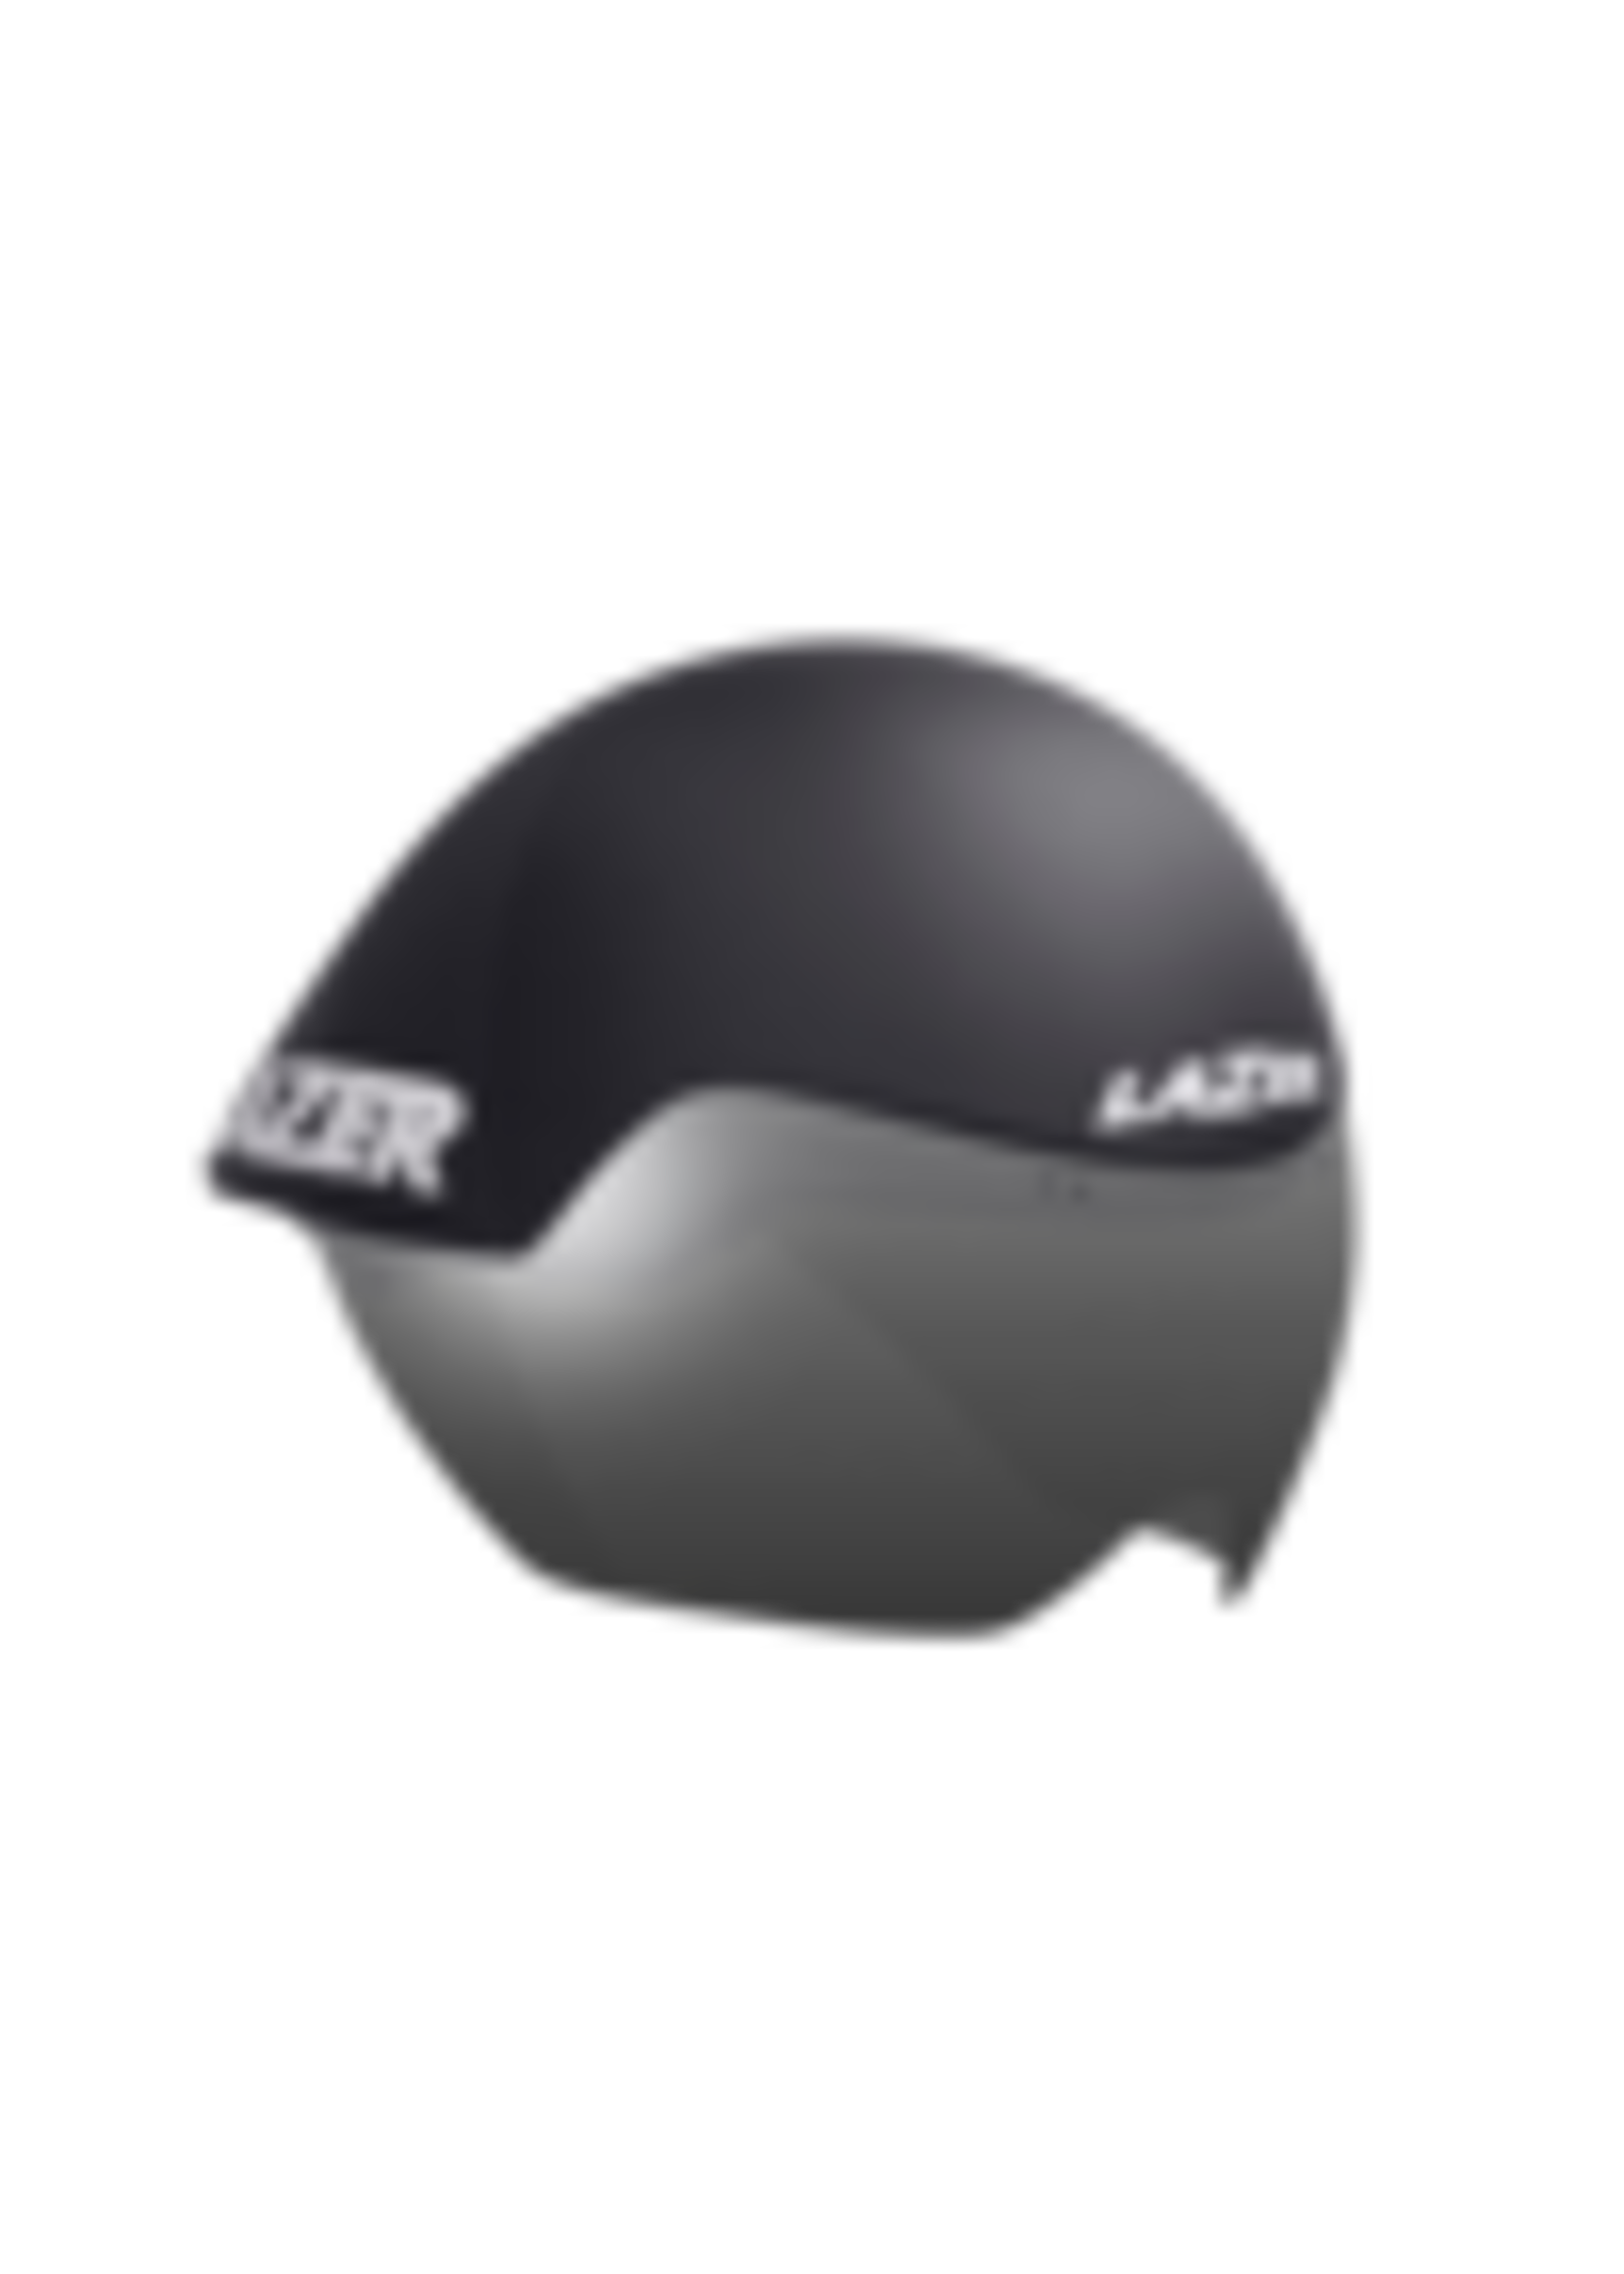 Lazer Volante Helmet